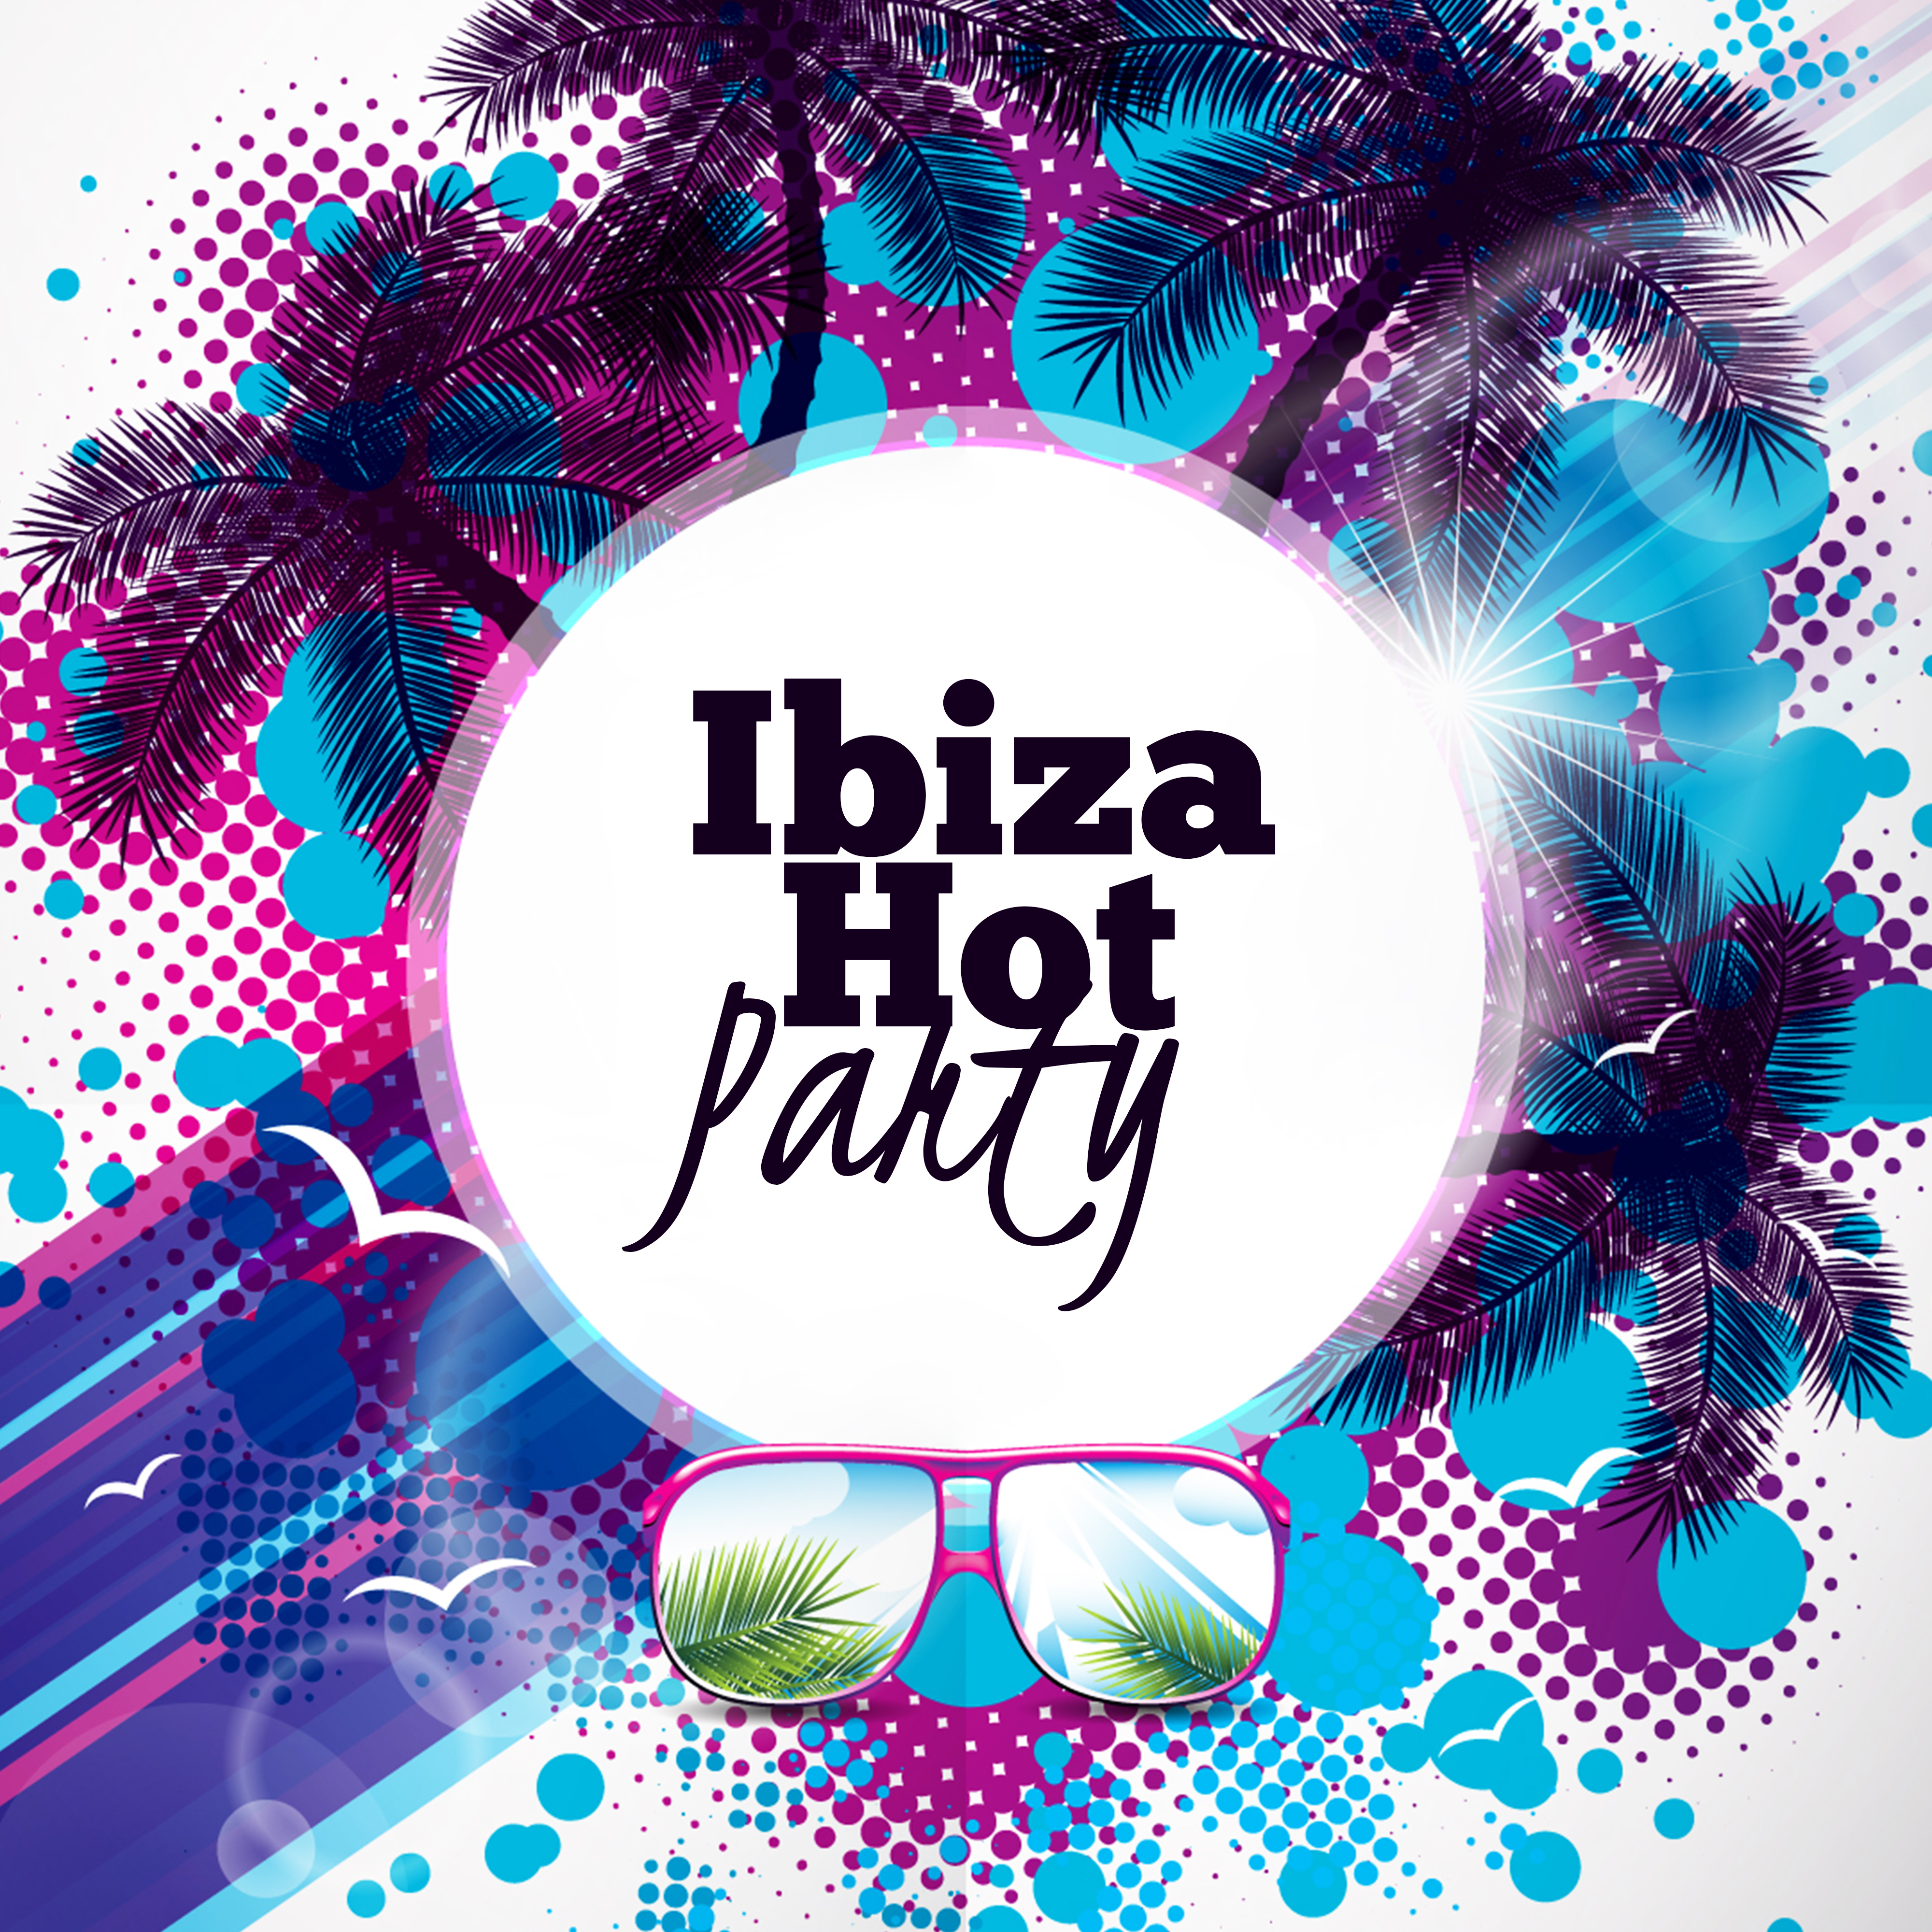 Ibiza Hot Party